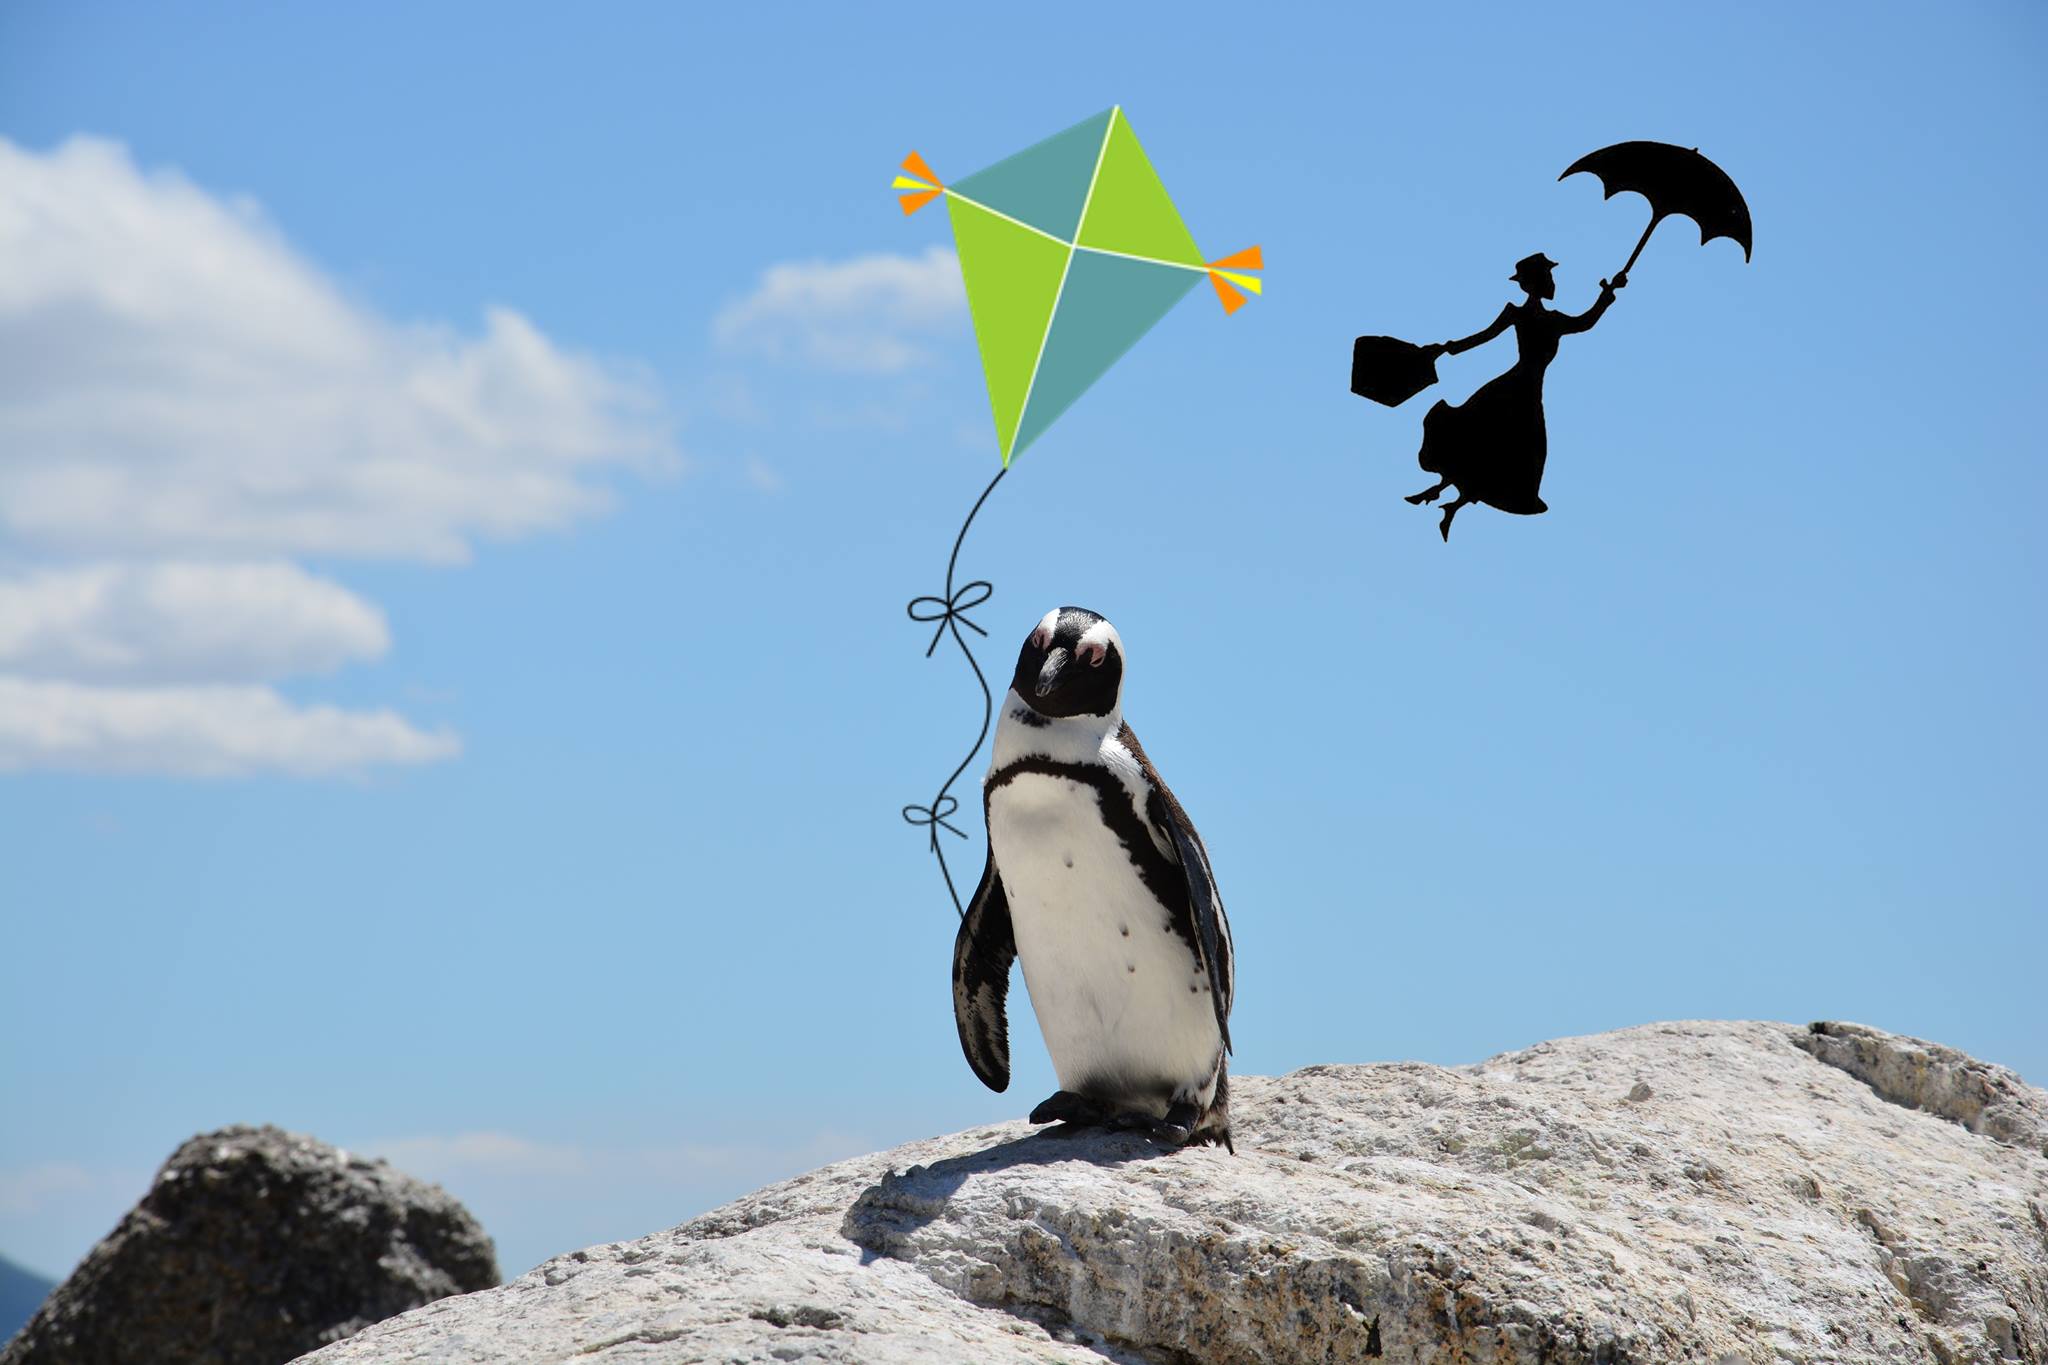 Mary poppins kite